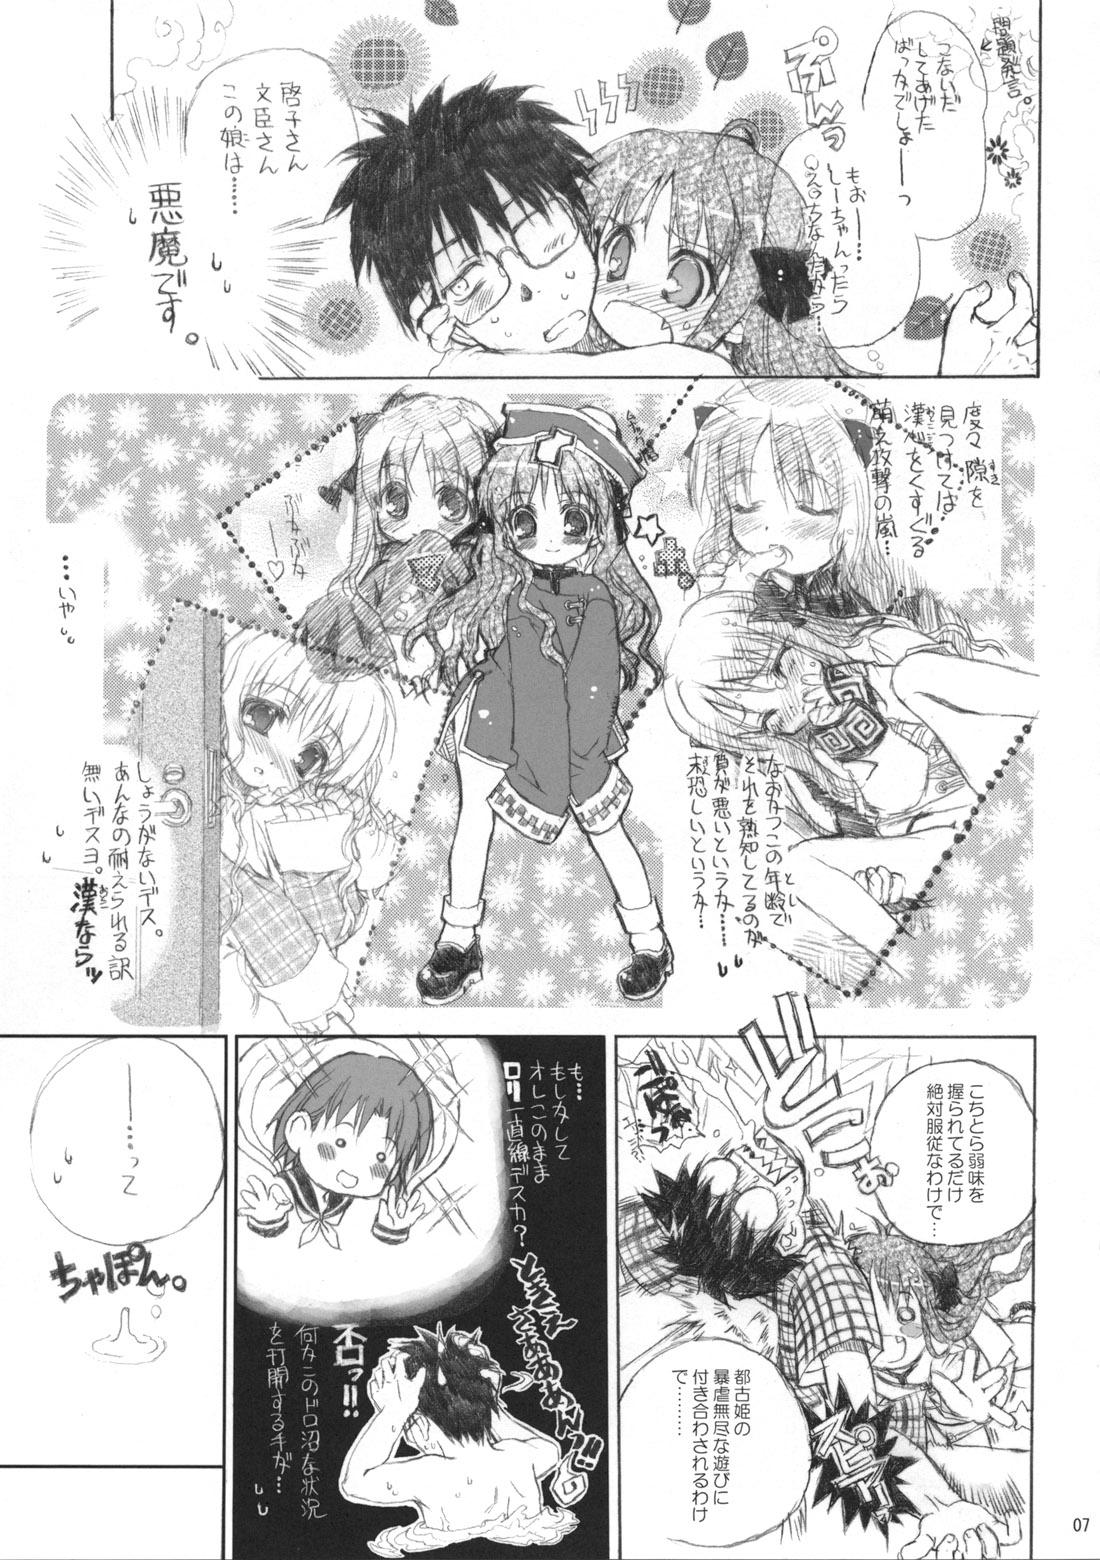 Argenta Neko-bus Tei no Hon vol.5 - Tsukihime Chupando - Page 7